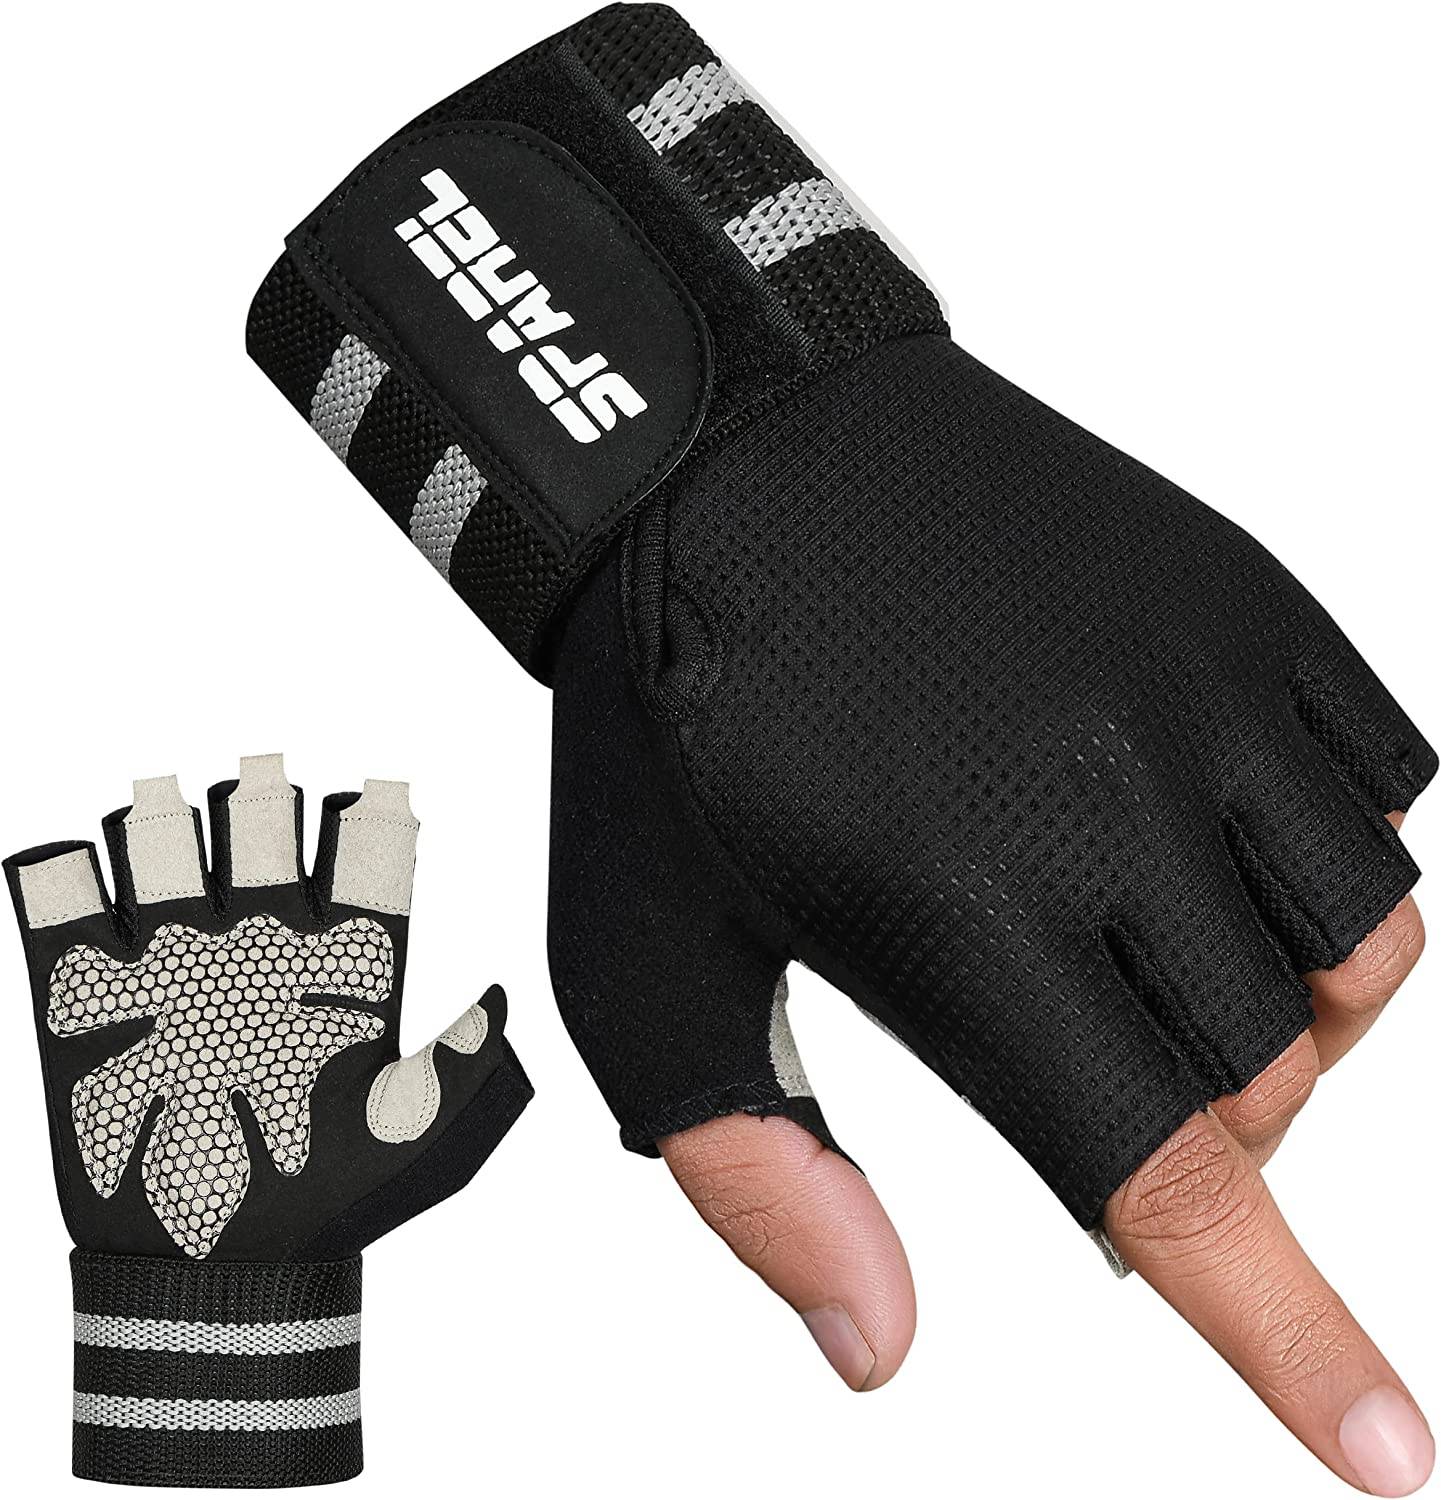 SPAREL Workout Gloves